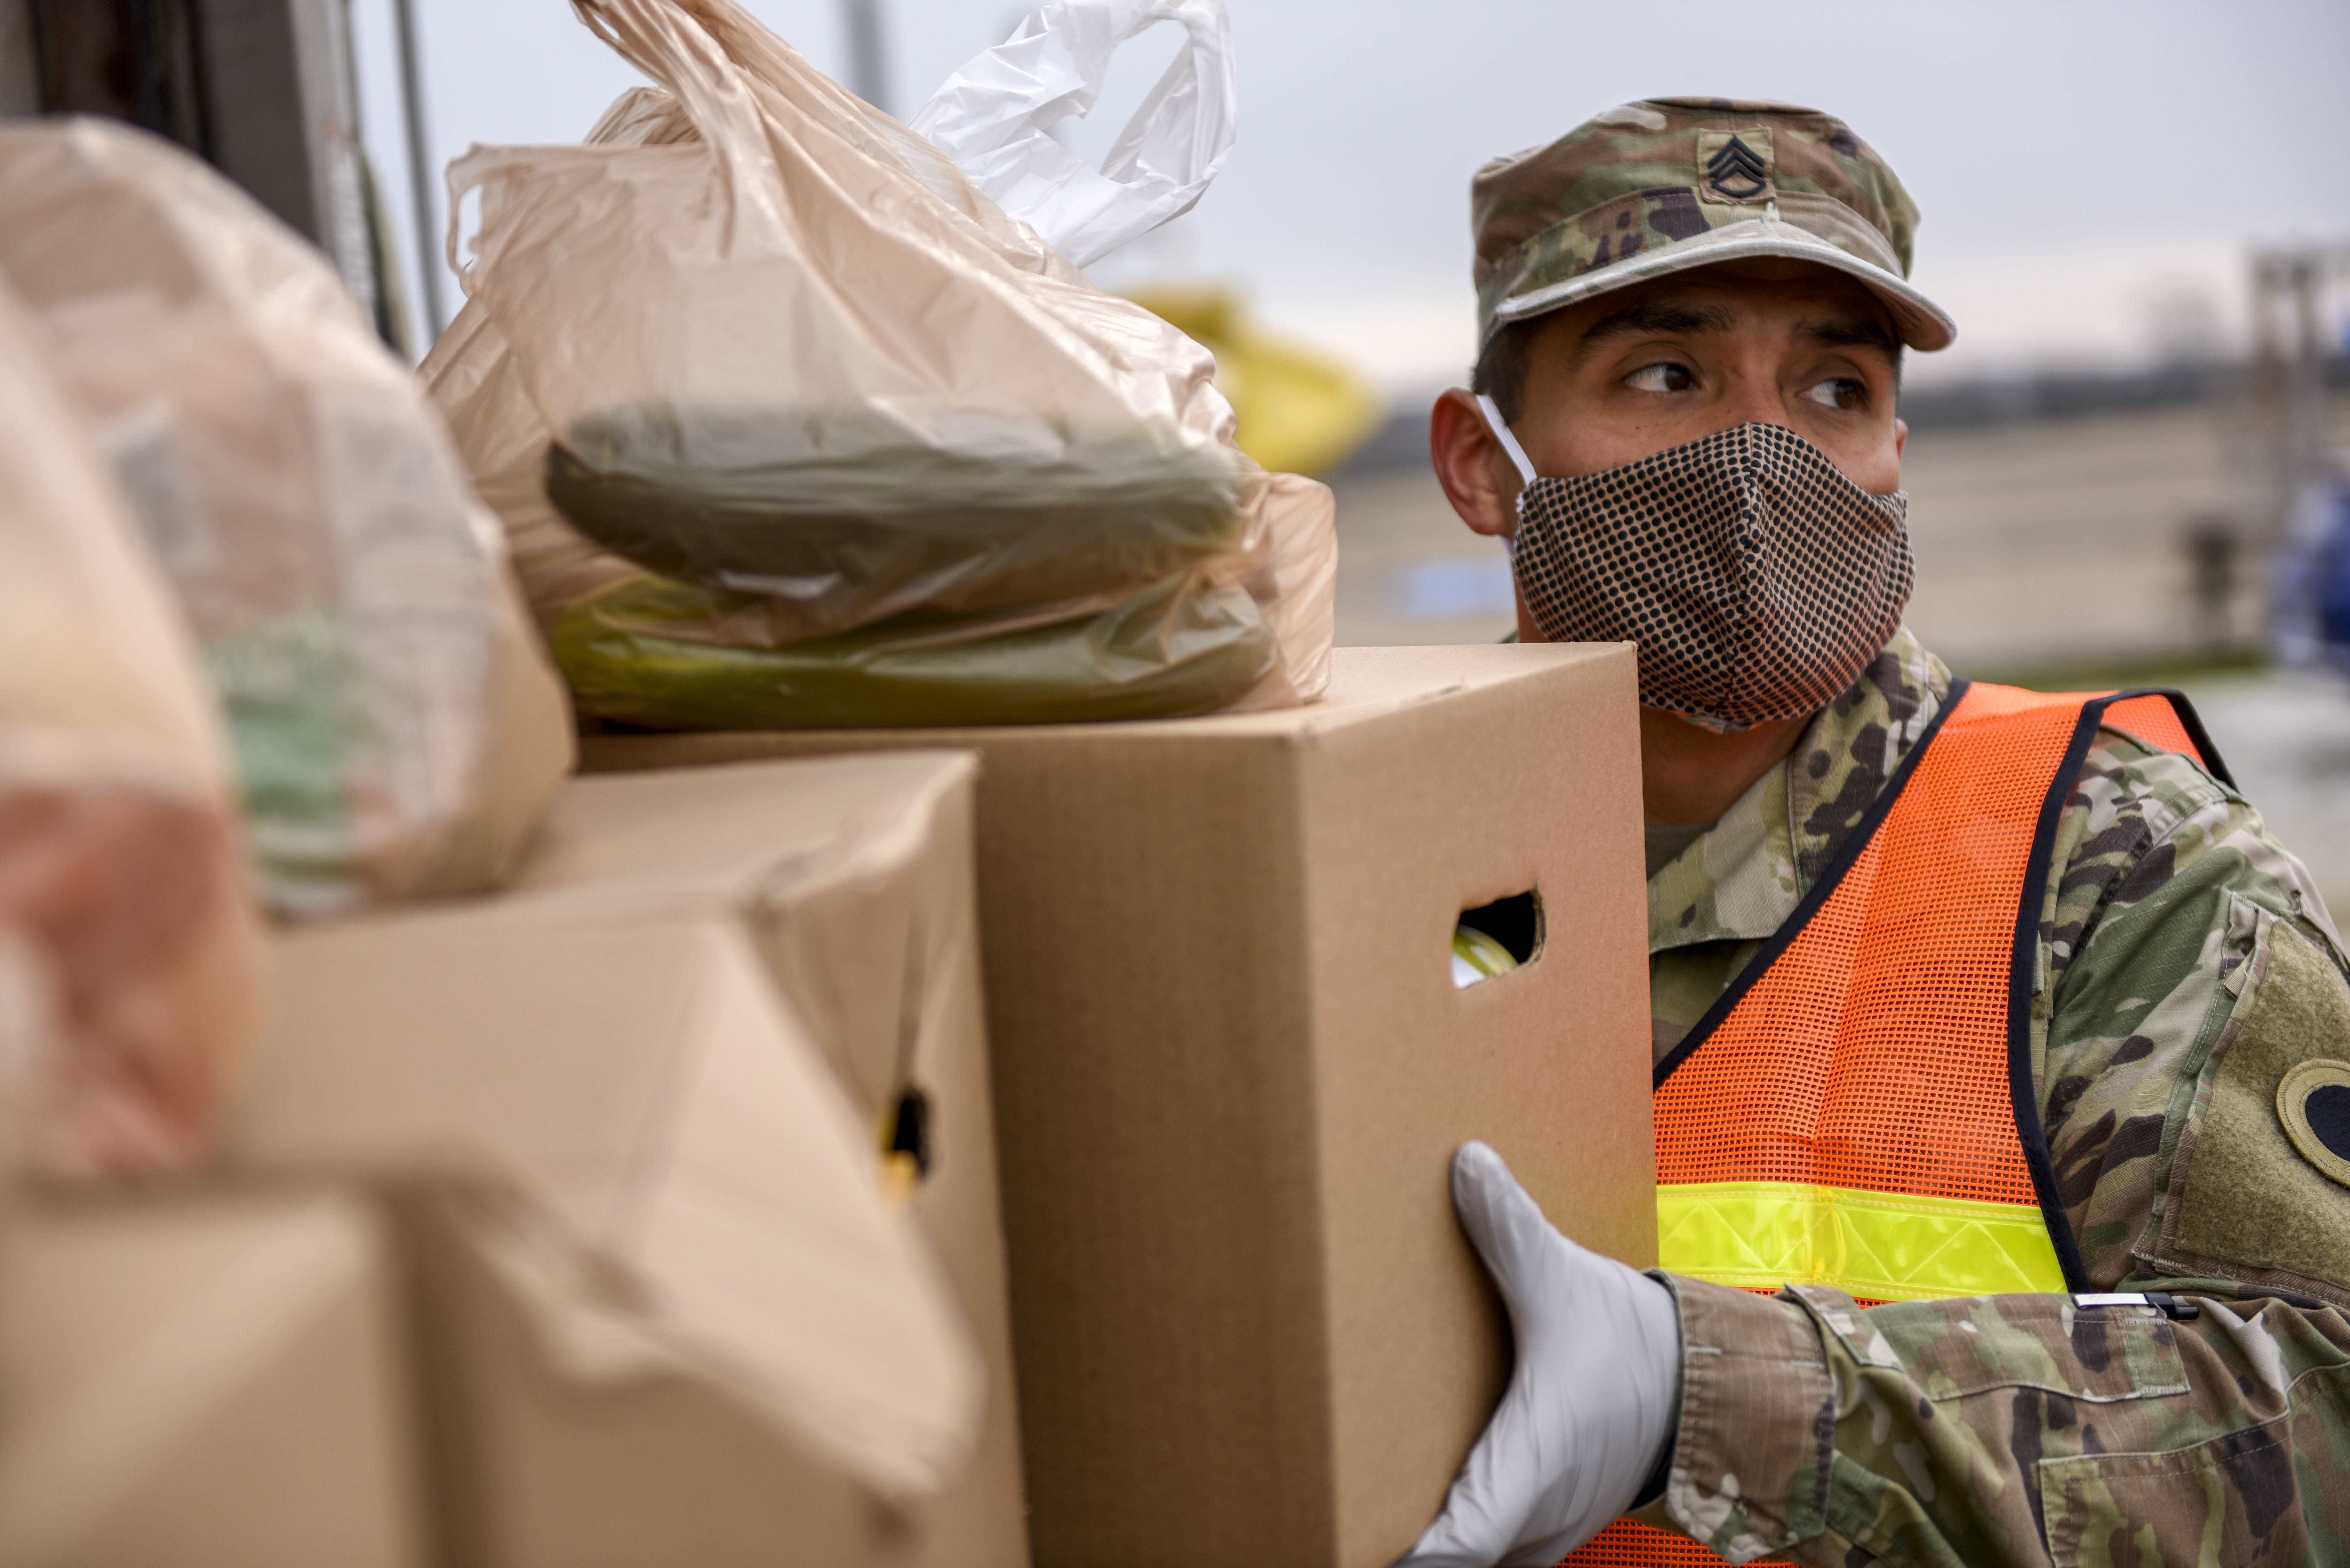 Soldiers unpack groceries at food bank.